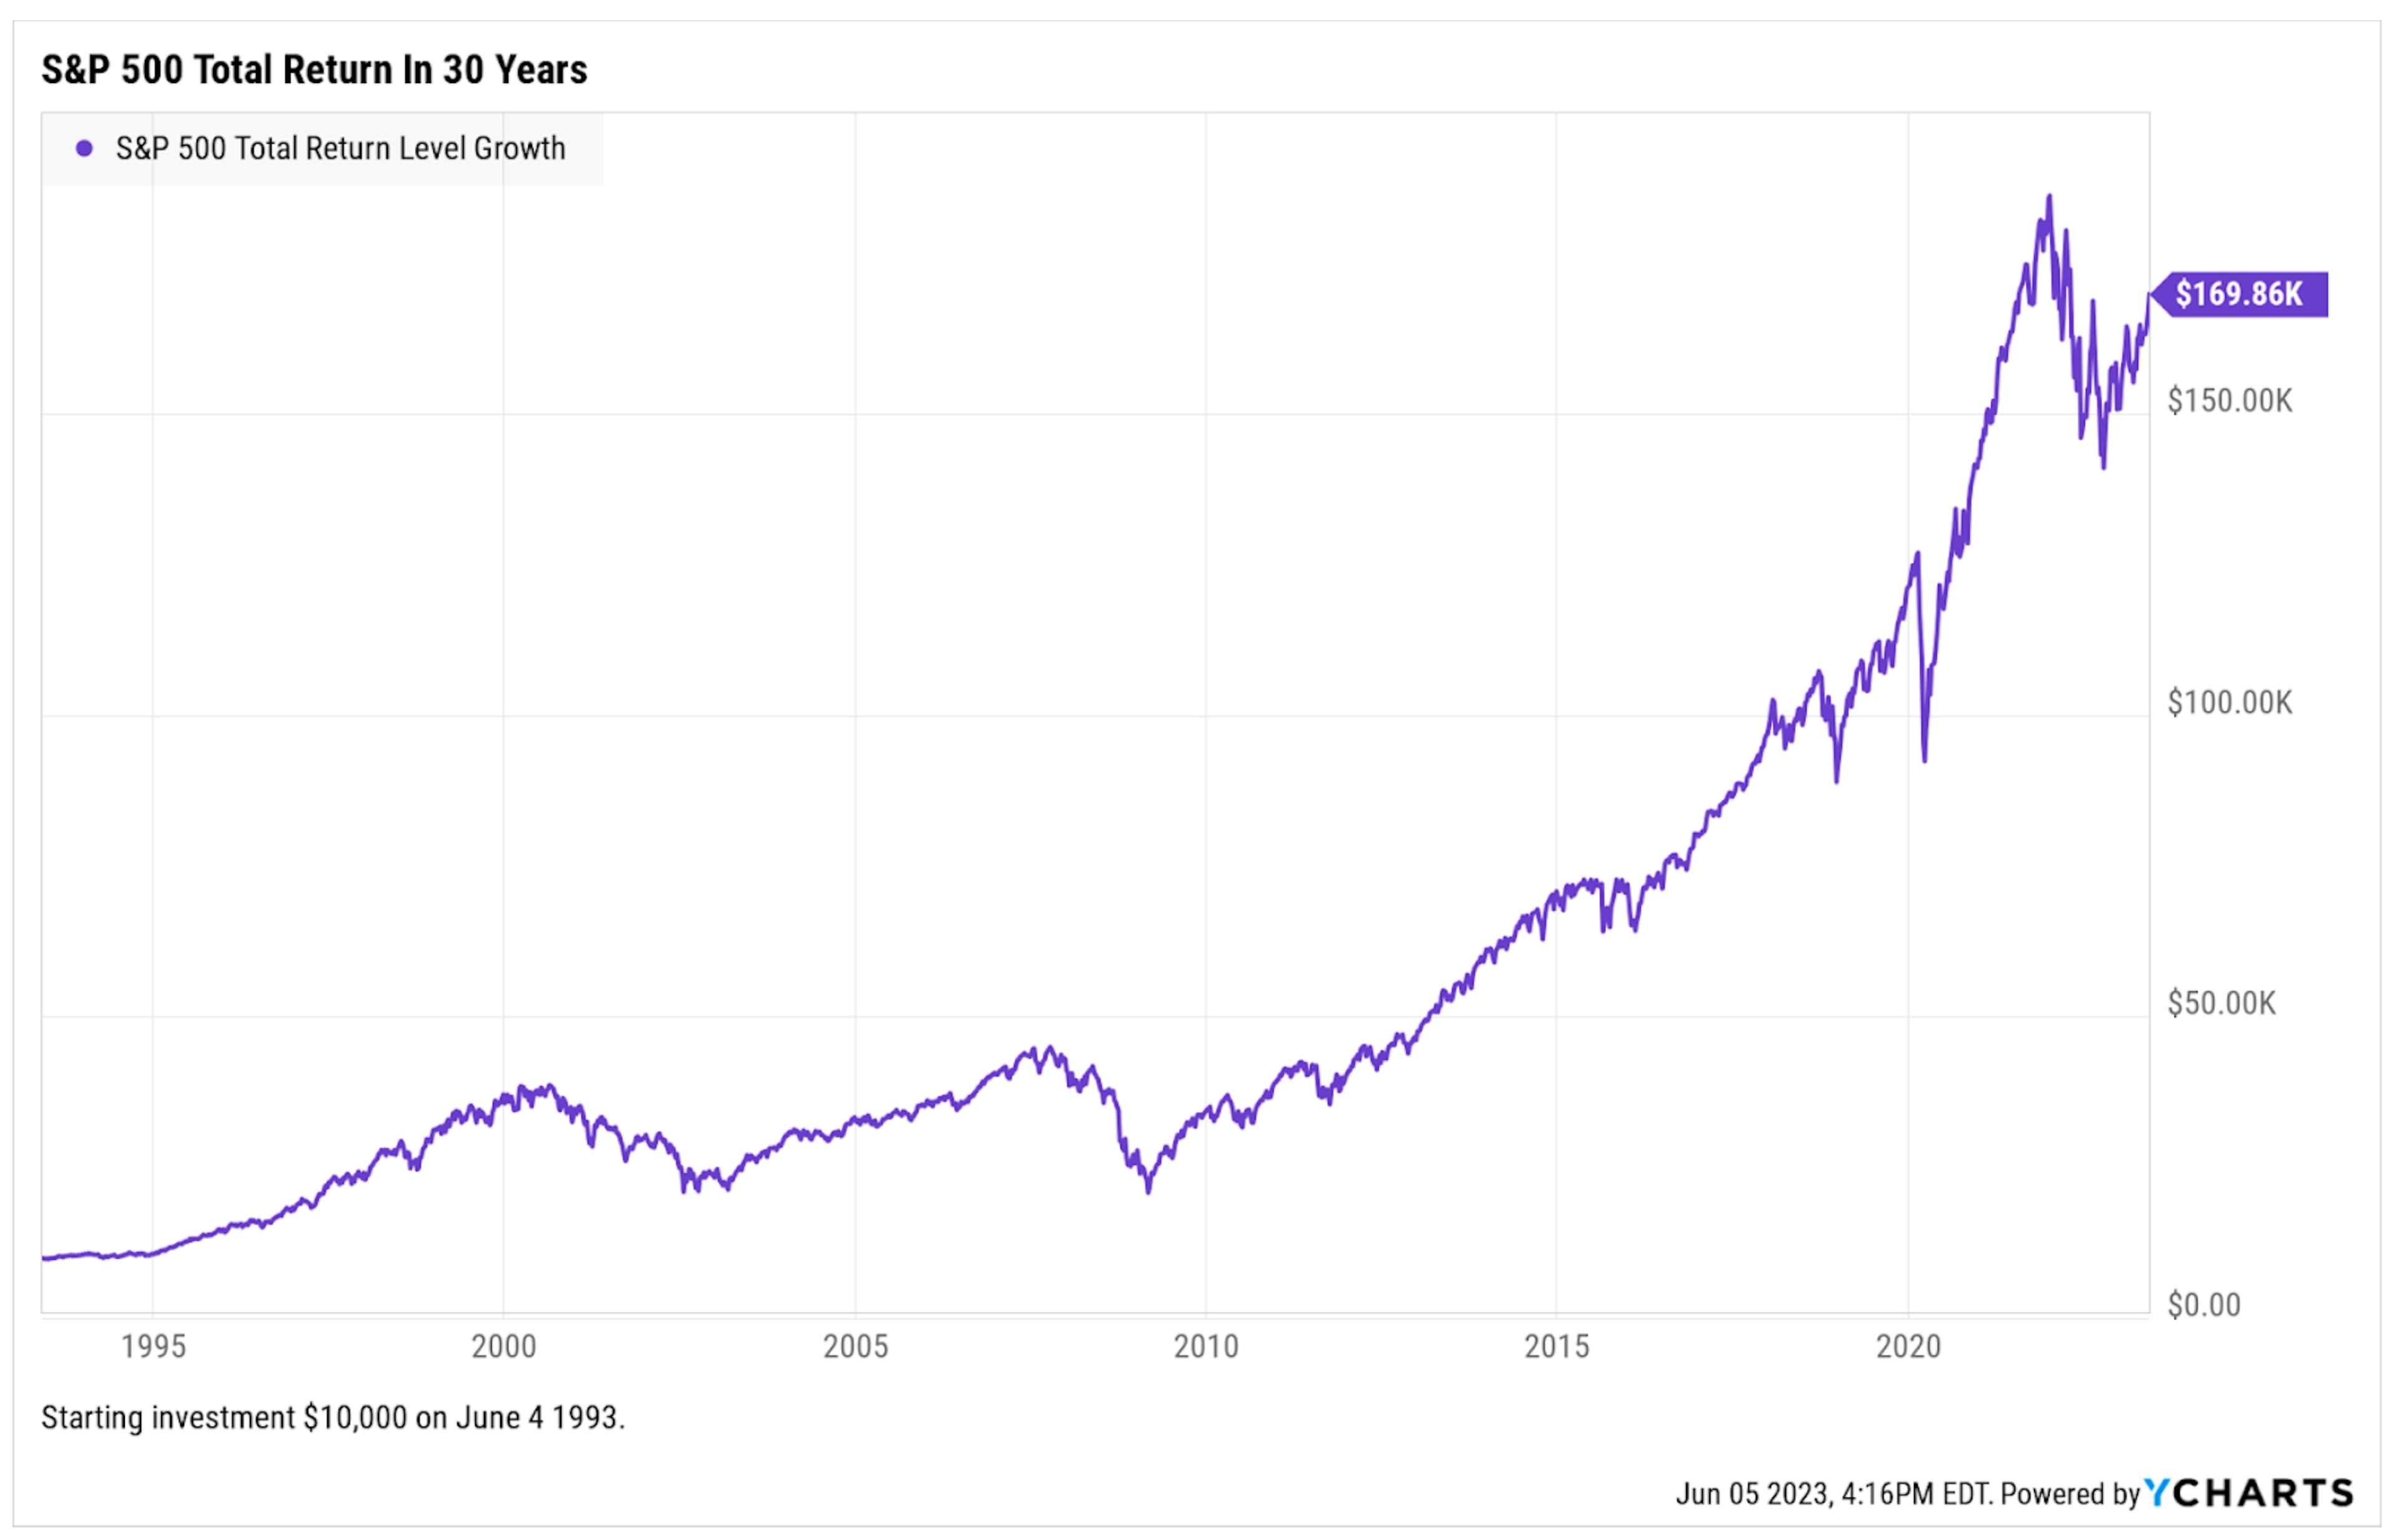 S&P 500 total return in 30 years